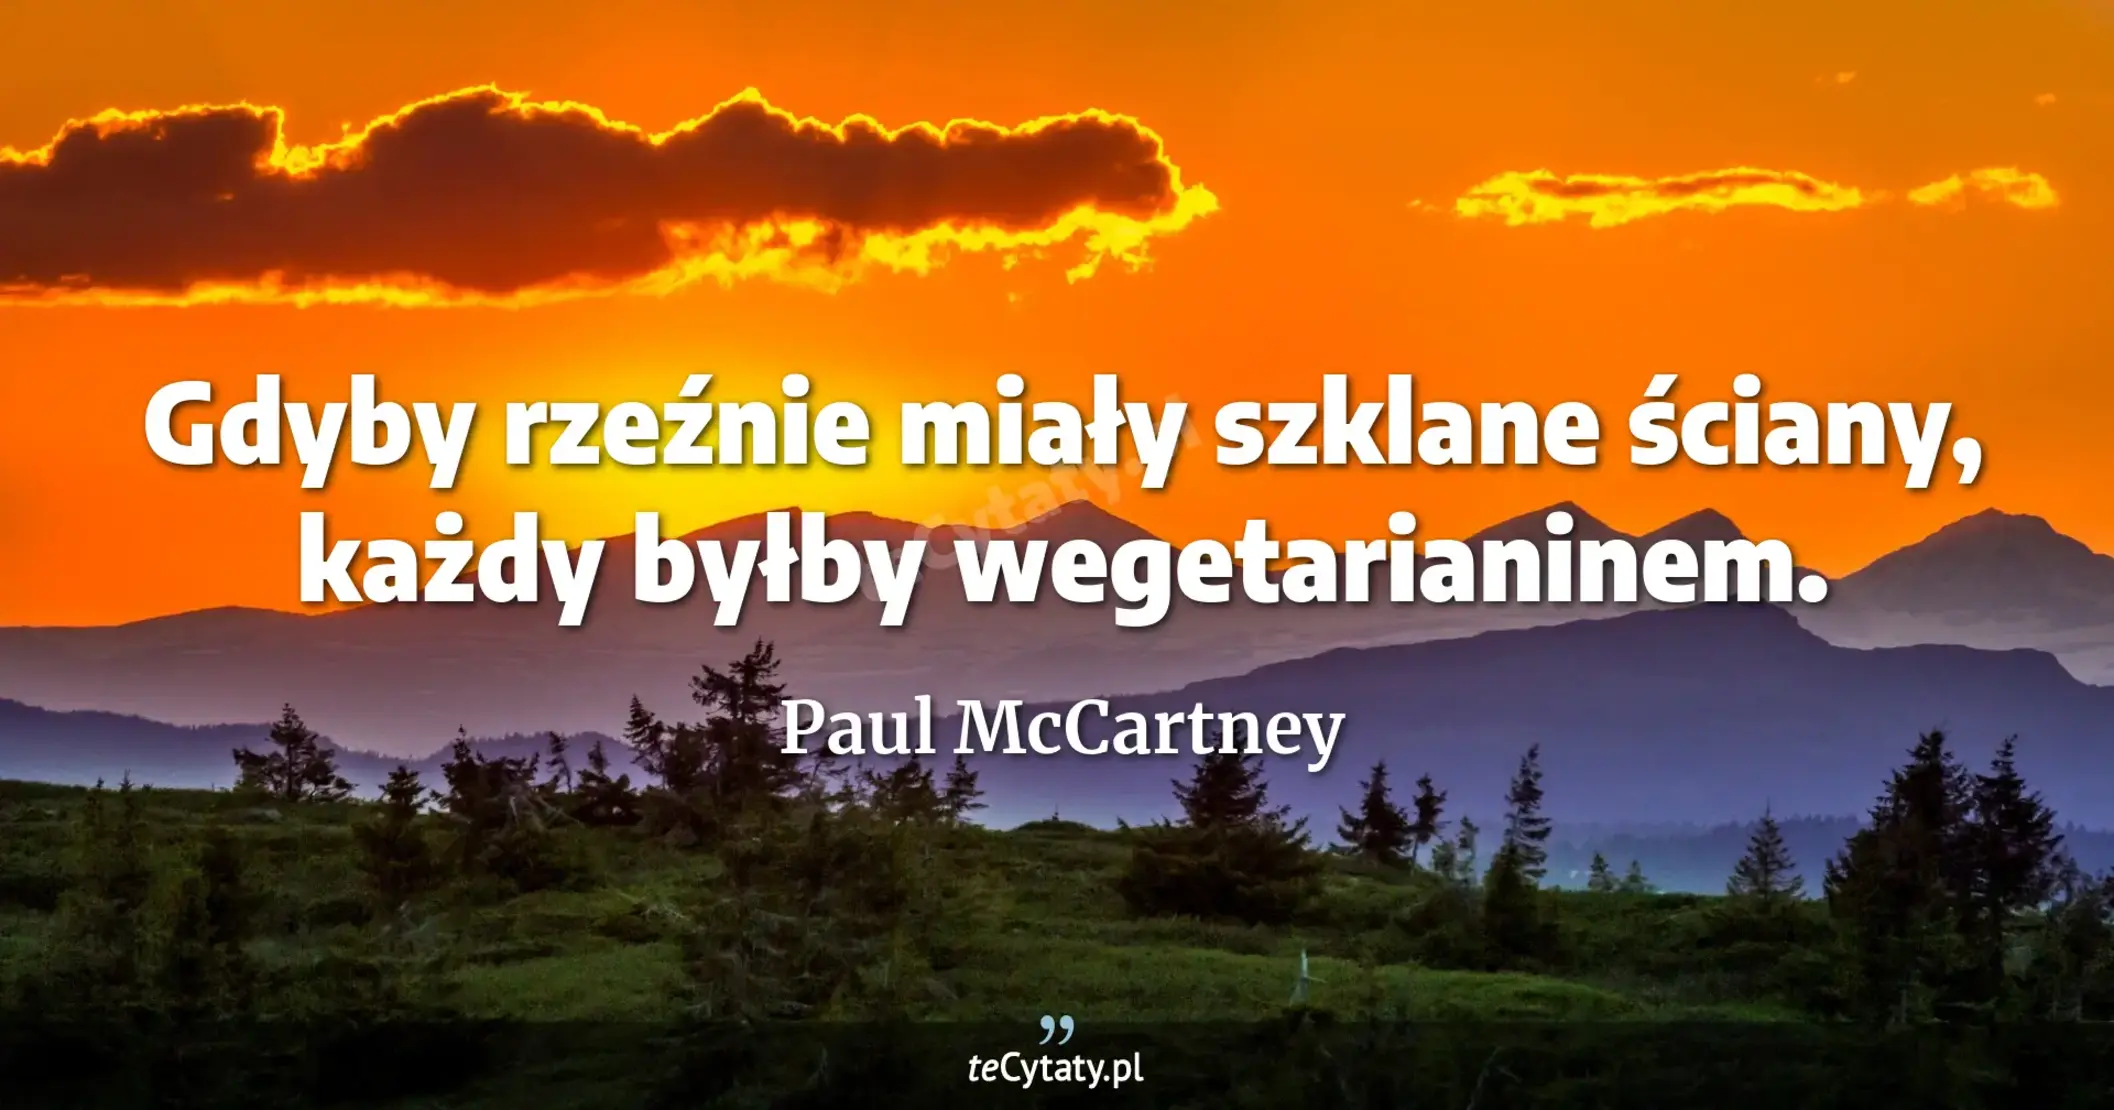 Gdyby rzeźnie miały szklane ściany, każdy byłby wegetarianinem. - Paul McCartney